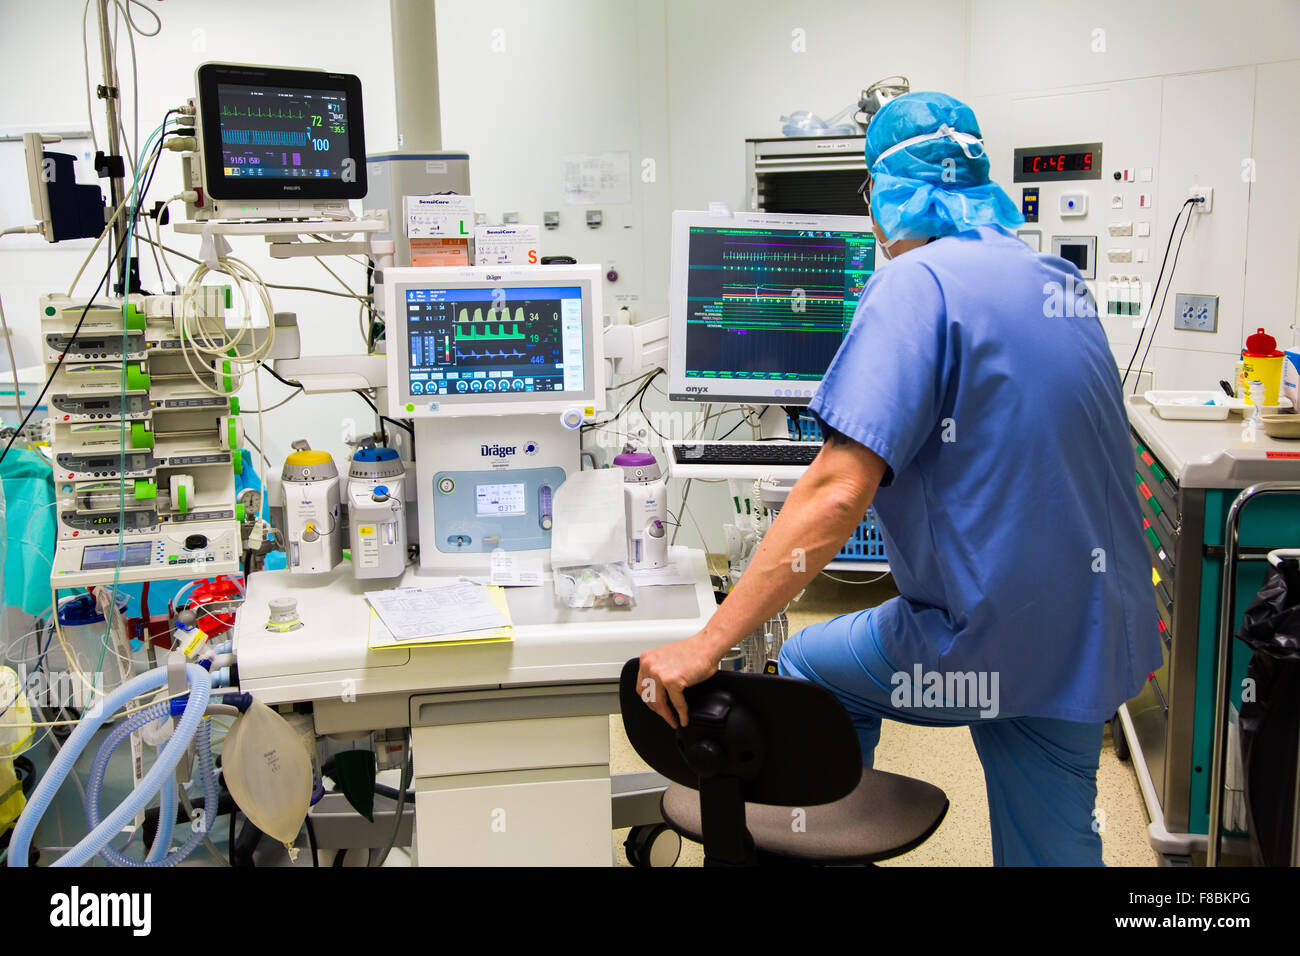 Chirurgische Monitore verwendet wird, um die Vitalfunktionen des Patienten während einer Operation zu verfolgen. Stockfoto